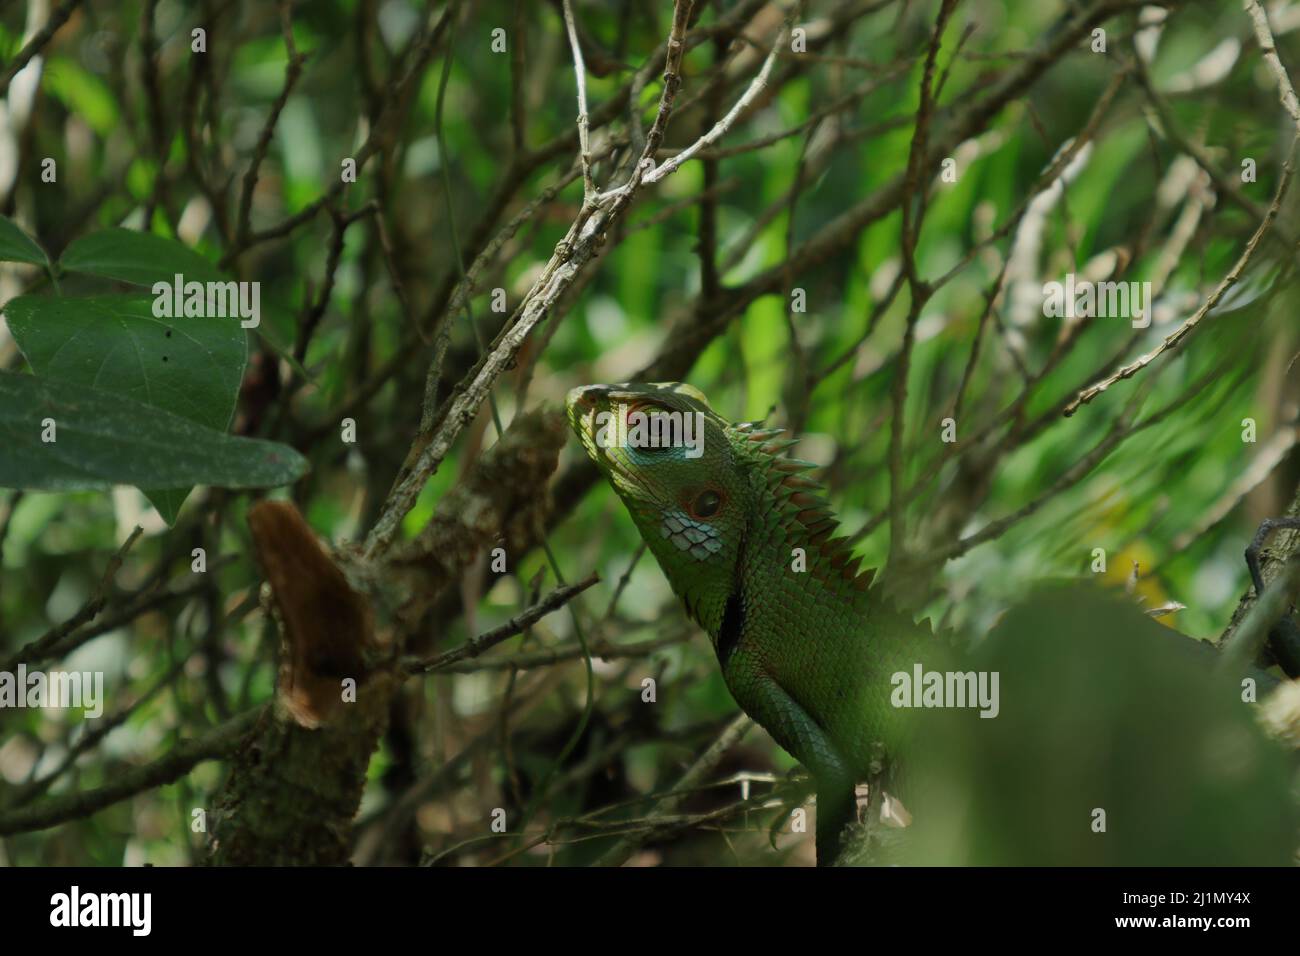 Kopf und obere Teile einer grünen Waldeidechse, die sich zwischen Baumzweigen versteckt. Eidechse starrt auf die Kamera Stockfoto